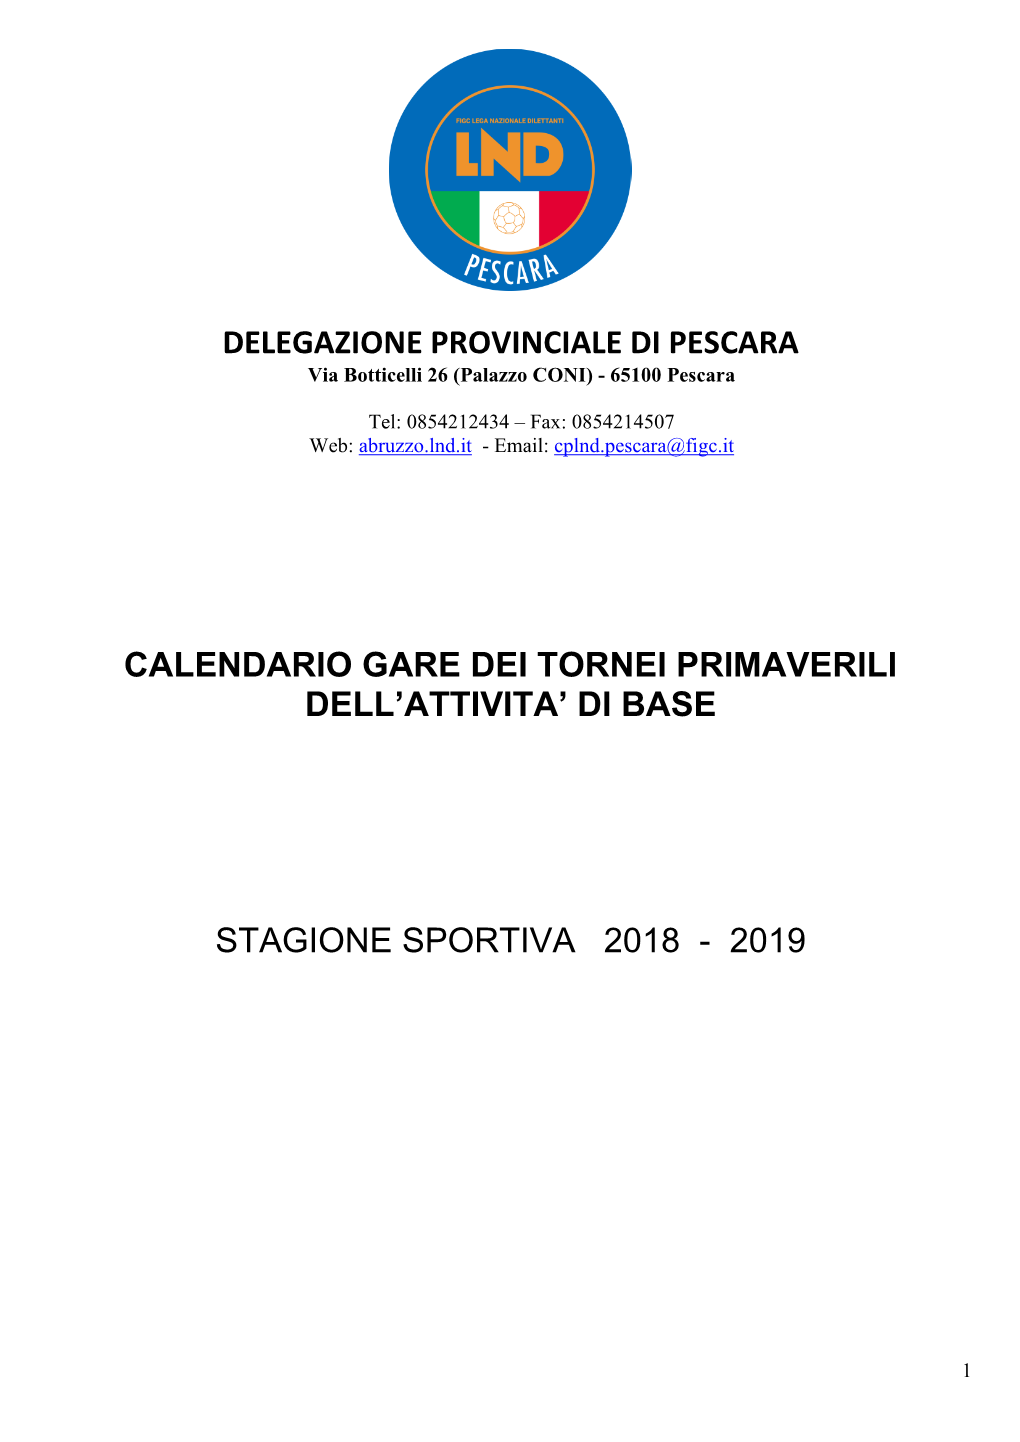 Calendario Gare Dei Tornei Primaverili Dell'attivita' Di Base Stagione Sportiva 2018